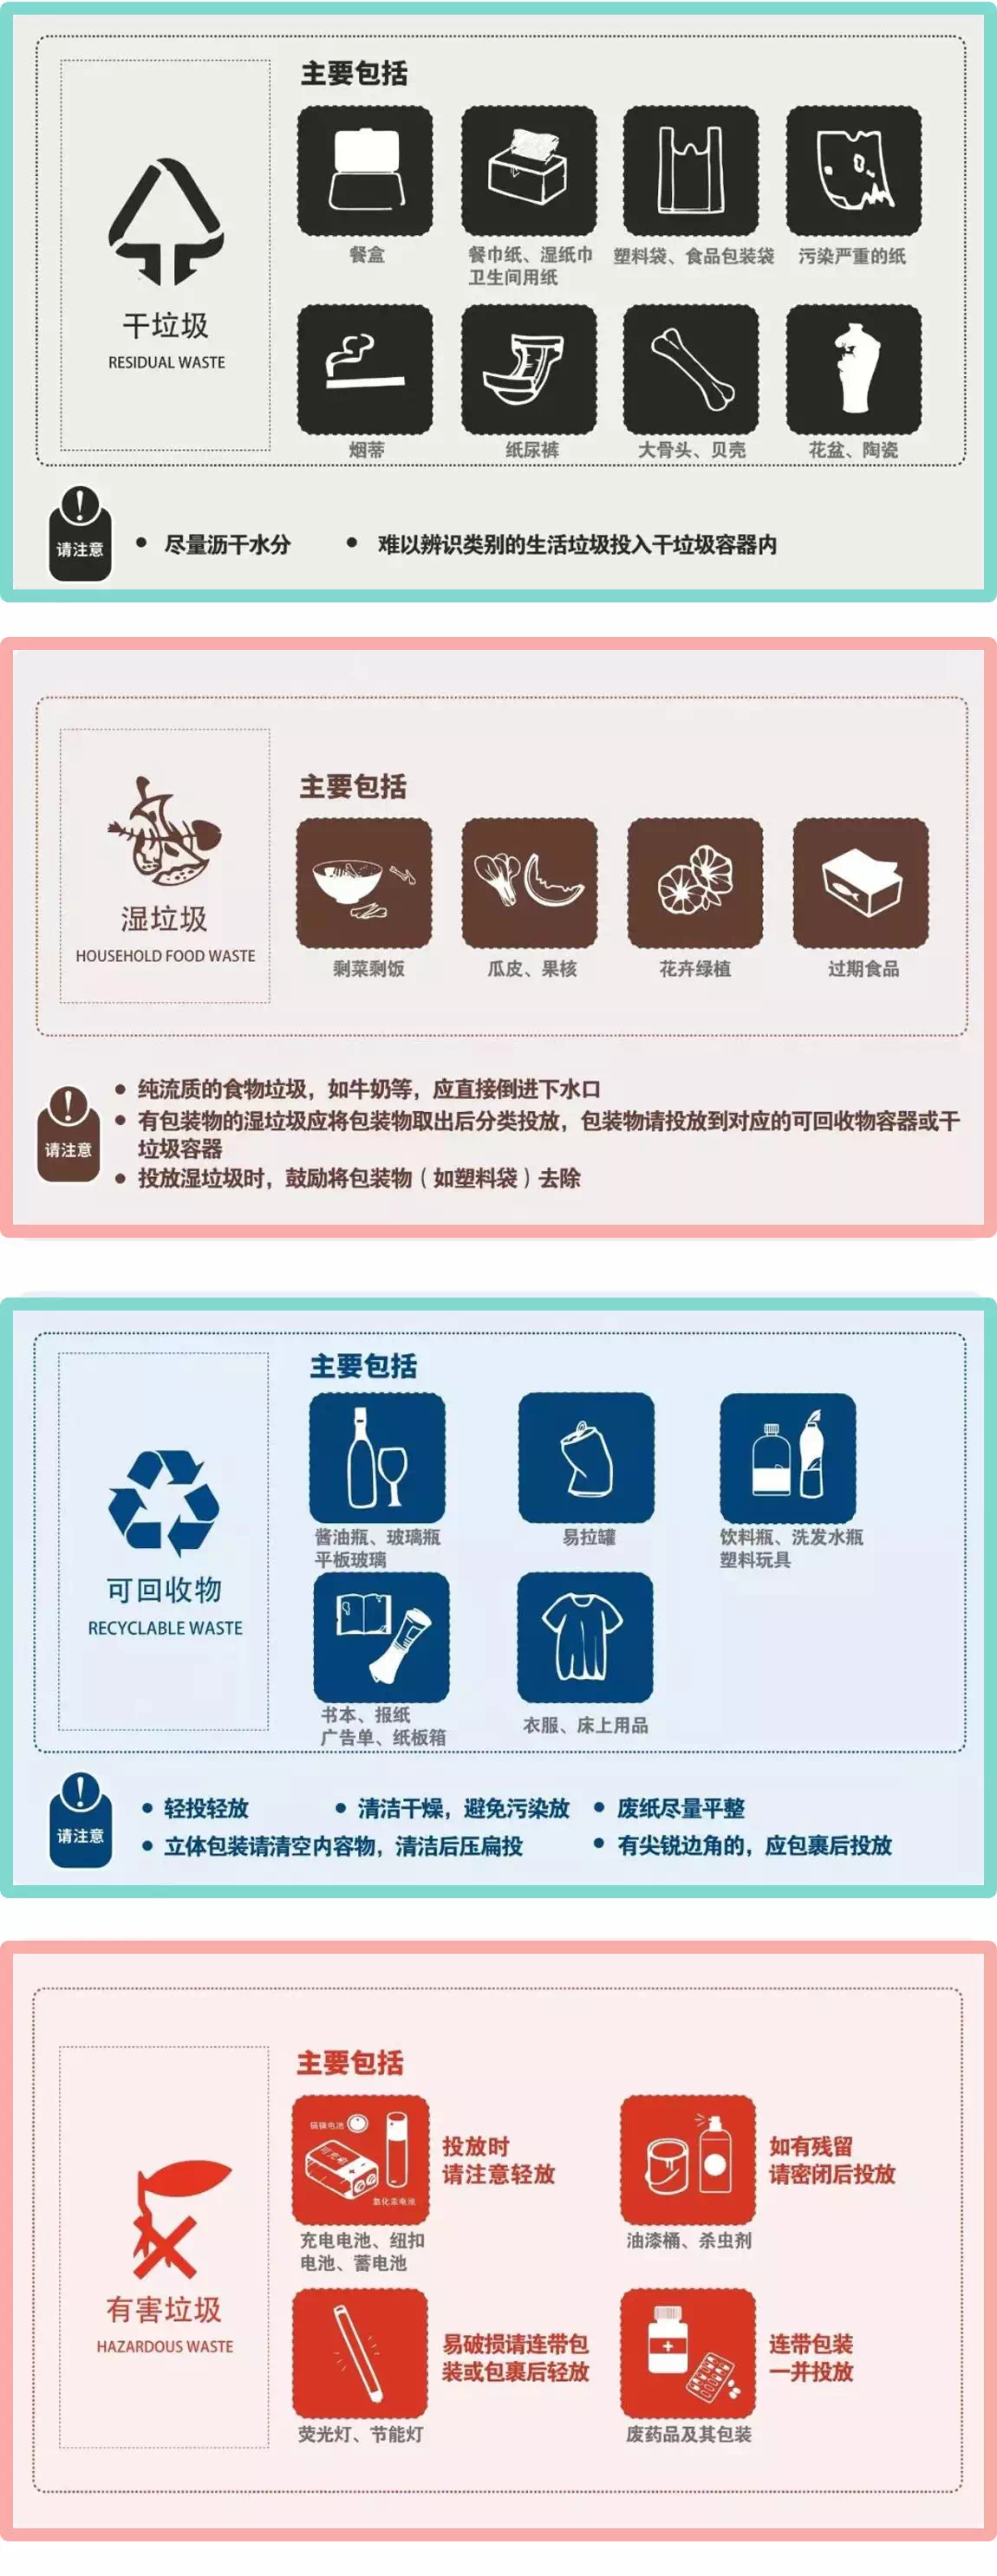 上海社區垃圾分類減量項目